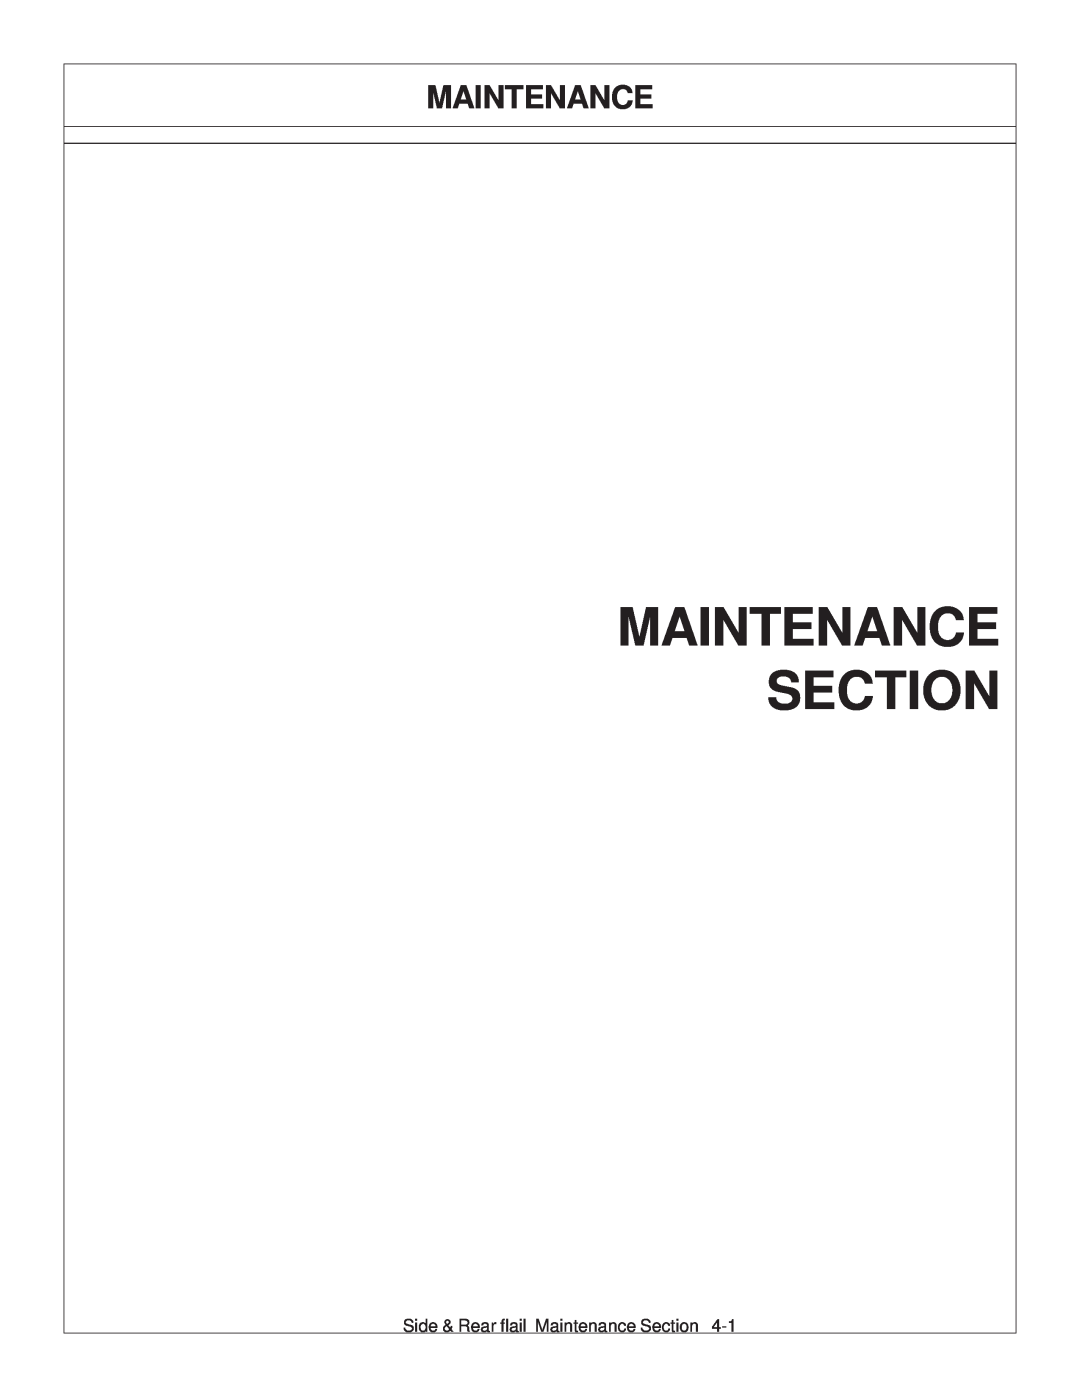 Tiger JD 5093E, JD 5083E, JD 5101E manual Maintenance Section 